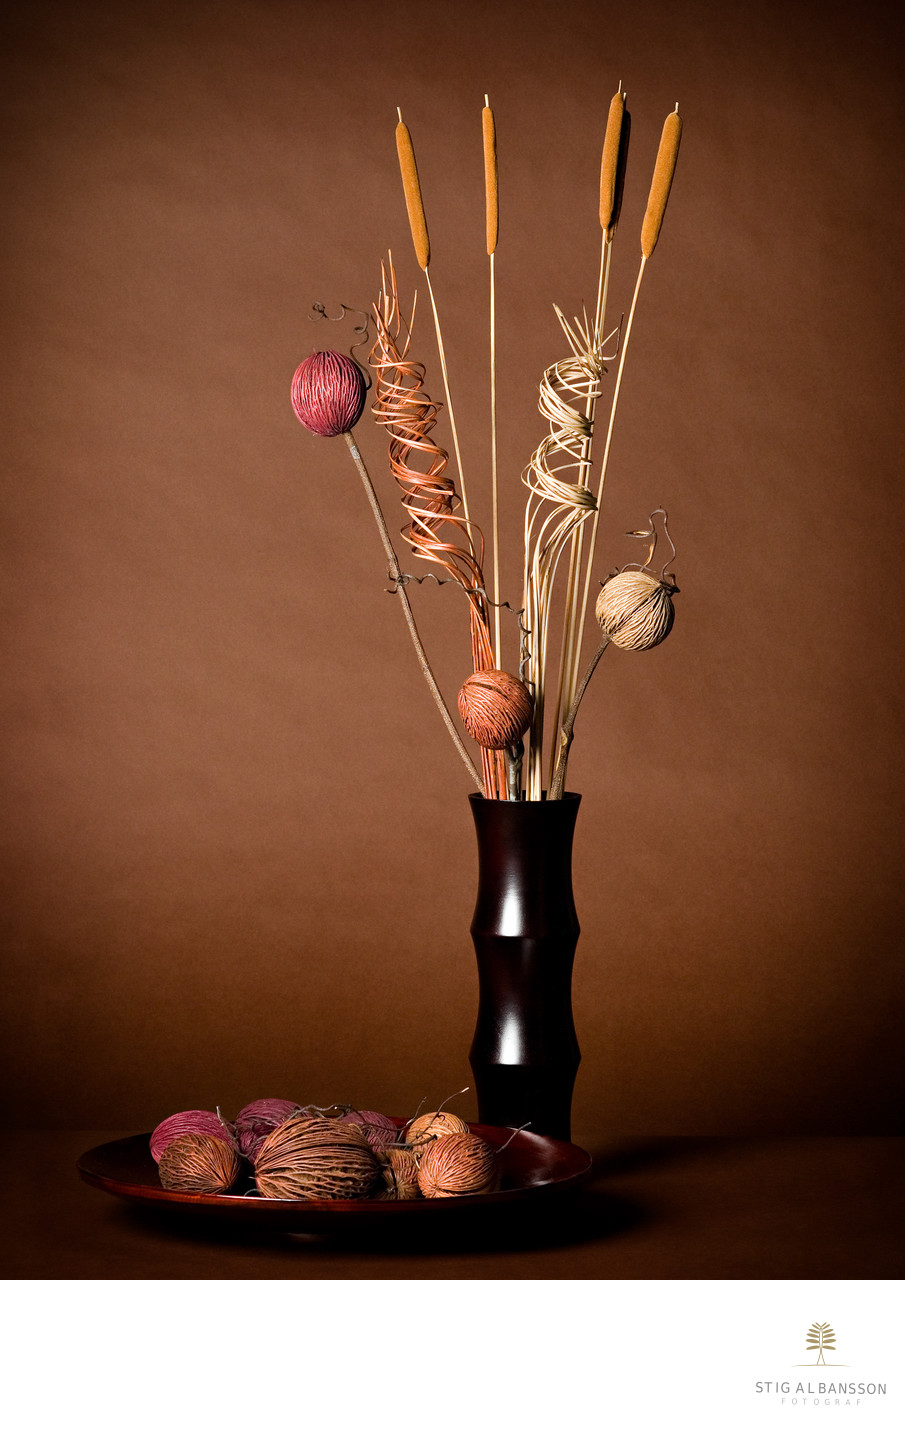 Produktfotografering av vas och växter i japansk stil